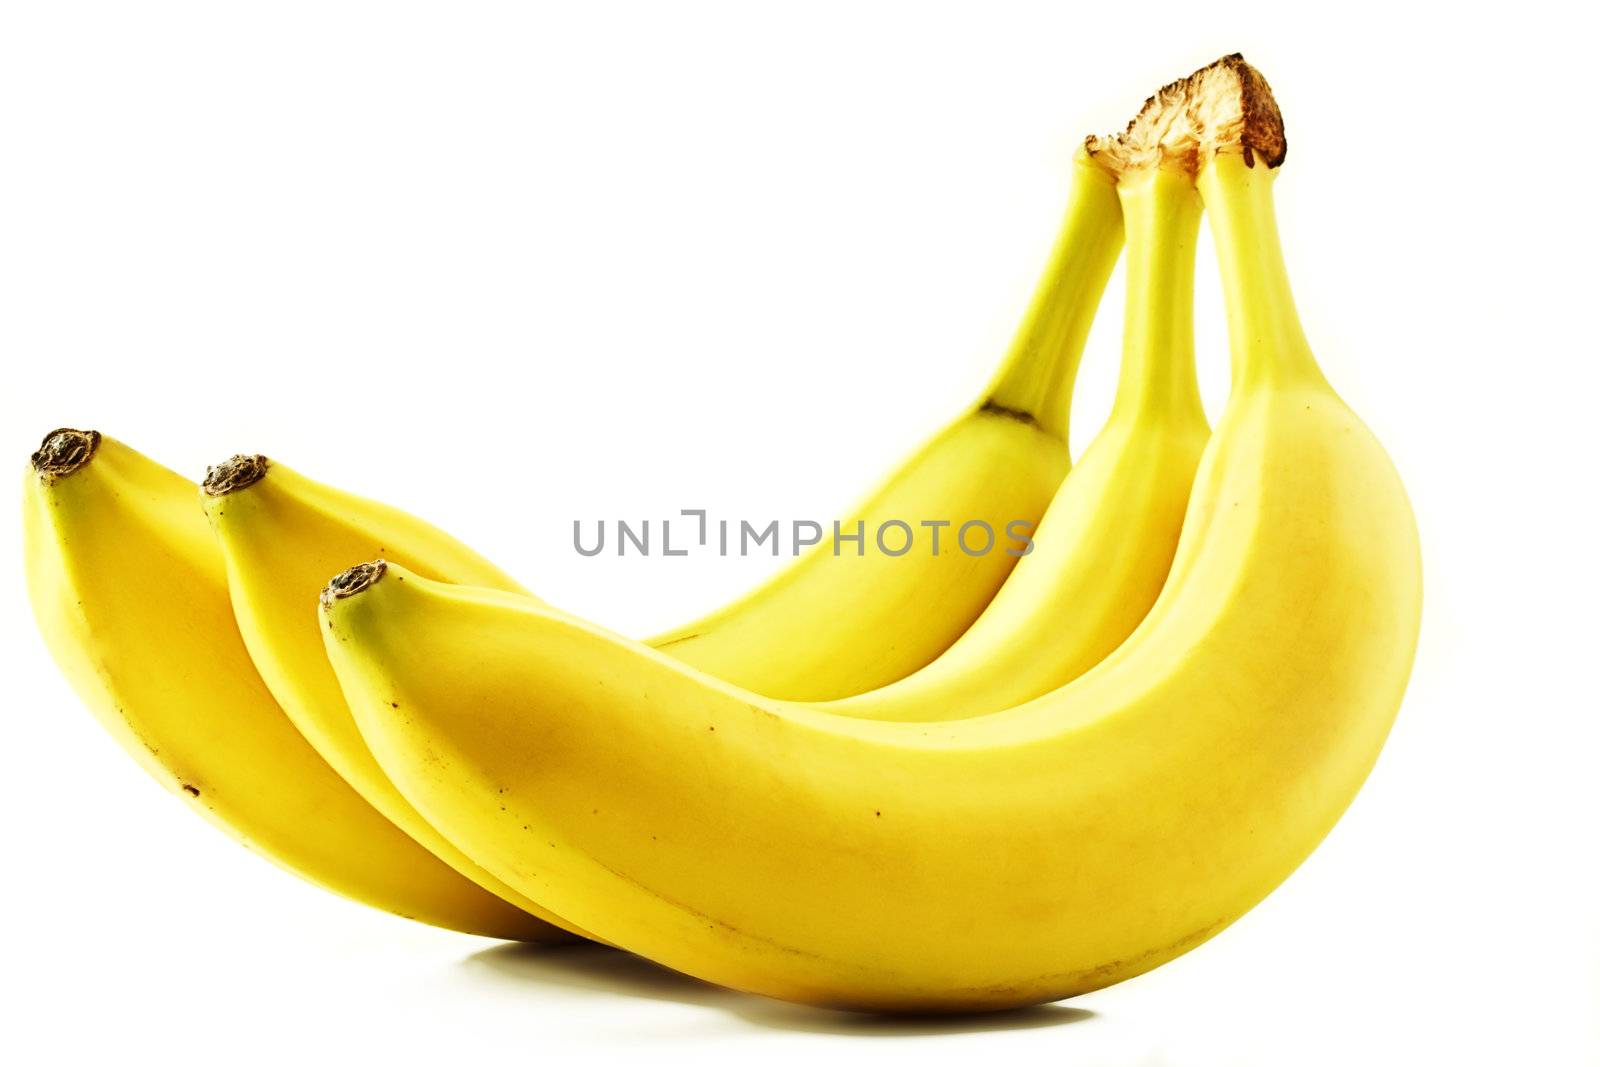 three yellow bananas on white background